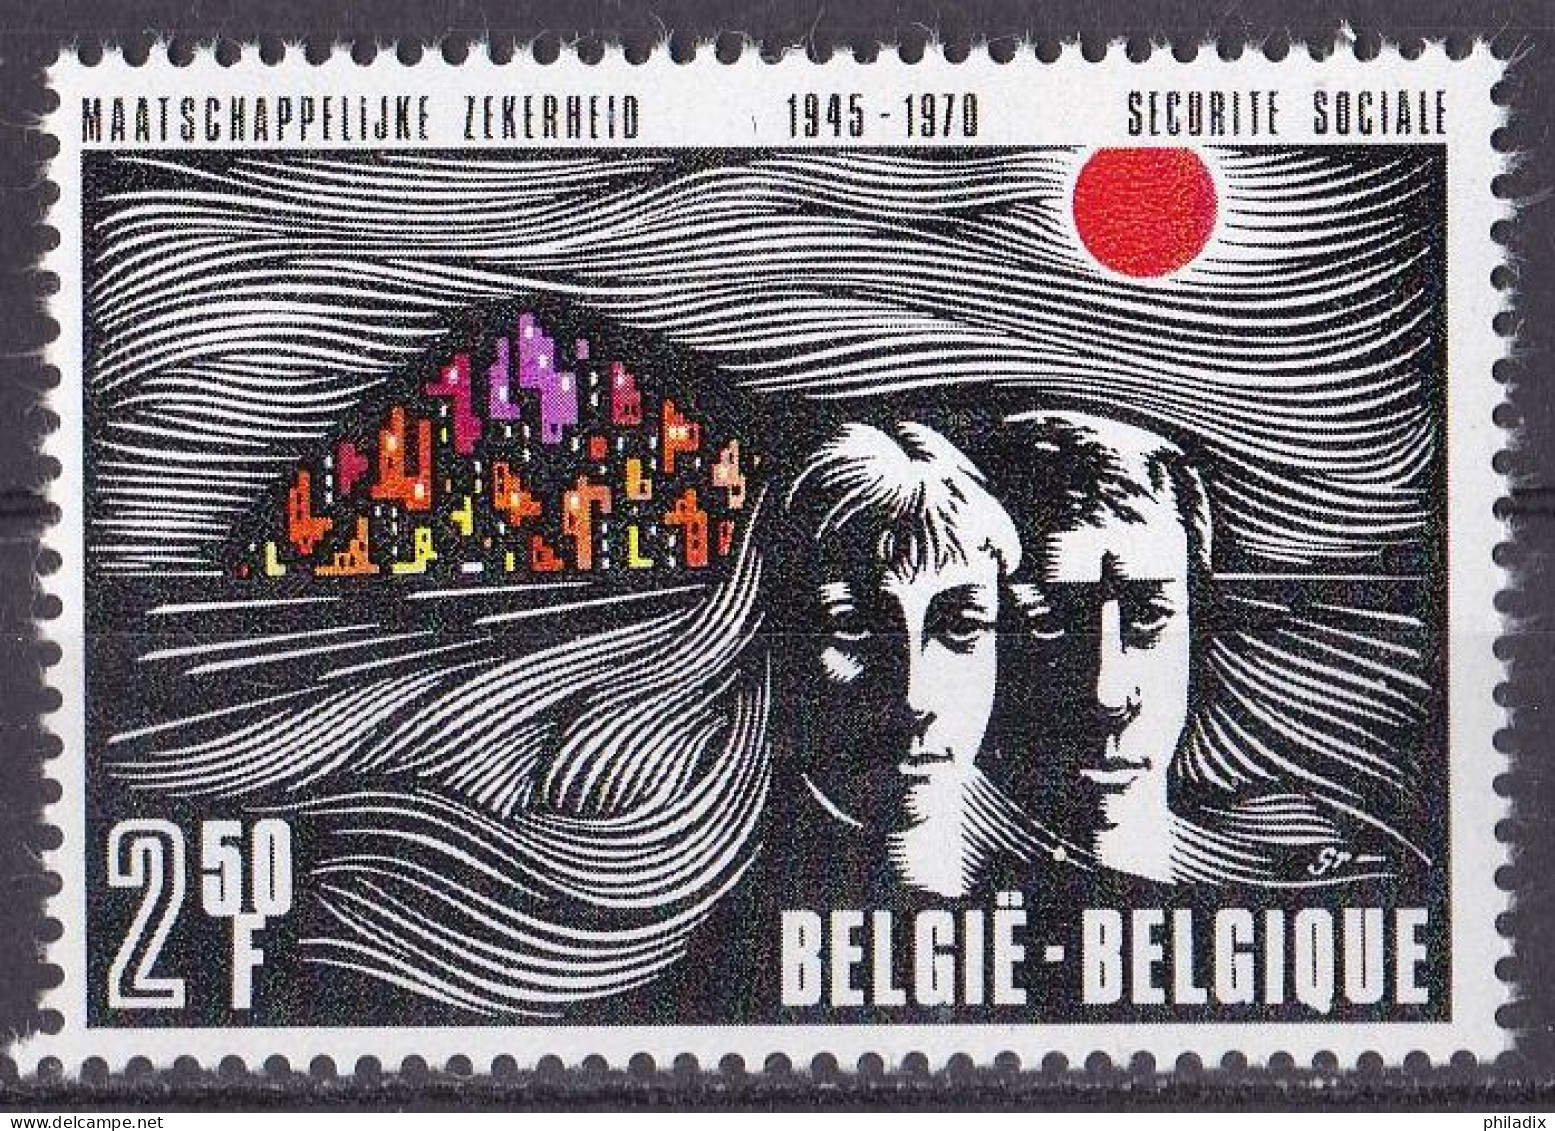 Belgien Marke Von 1970 **/MNH (A5-12) - Neufs